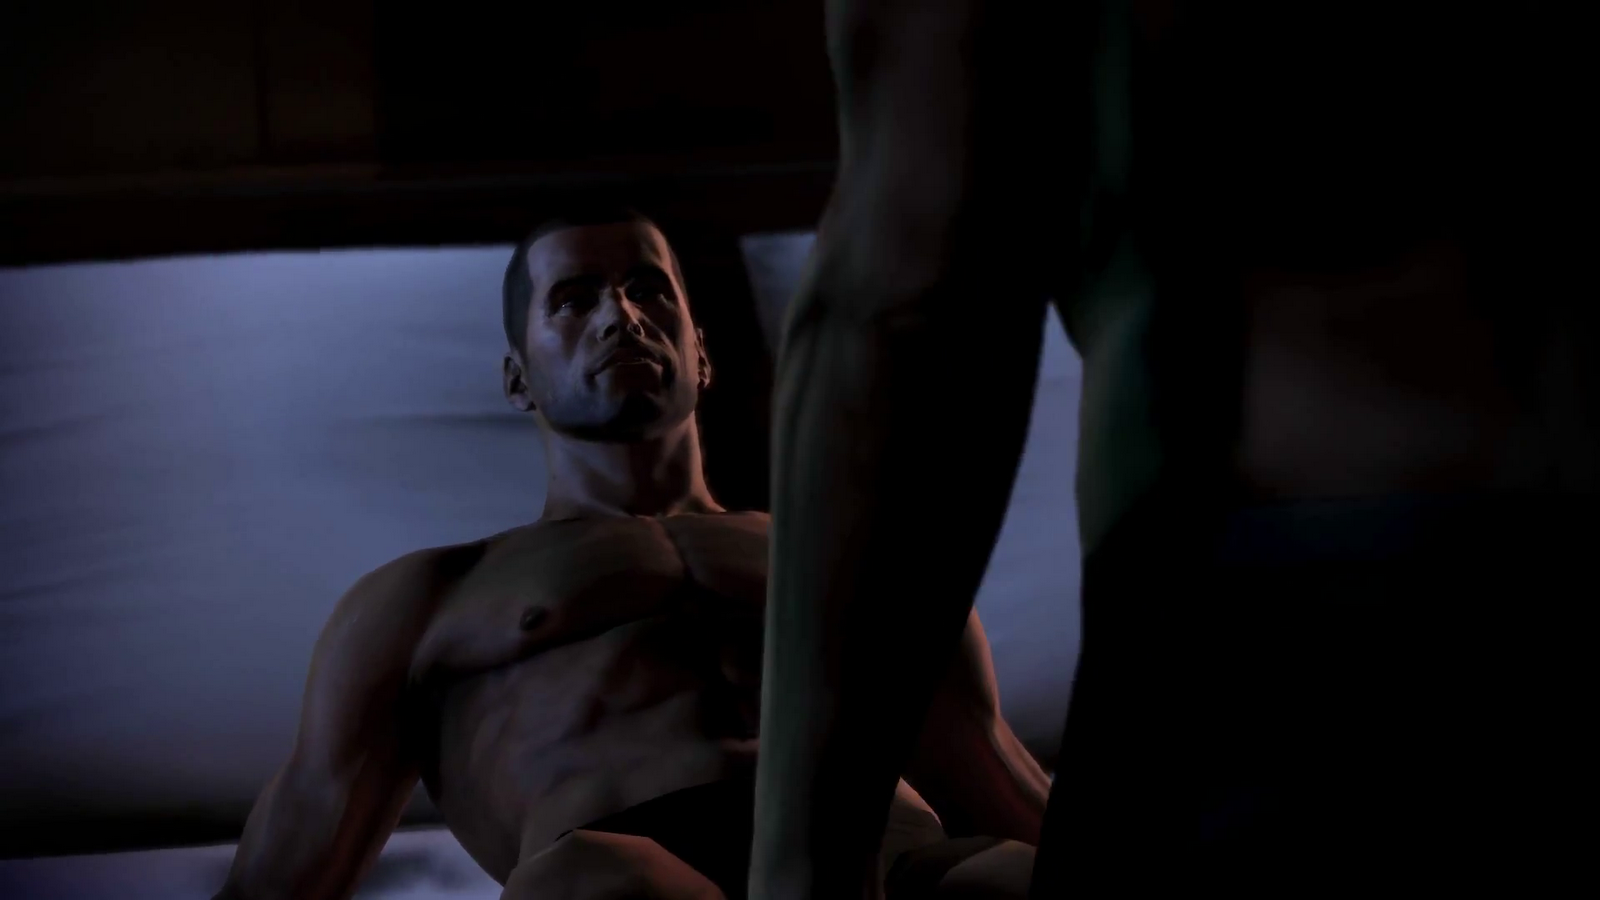 Reaper Mass Effect 3 Gay Porn - Mass Effect 3: Shepard & Kaidan Have Gay Sex